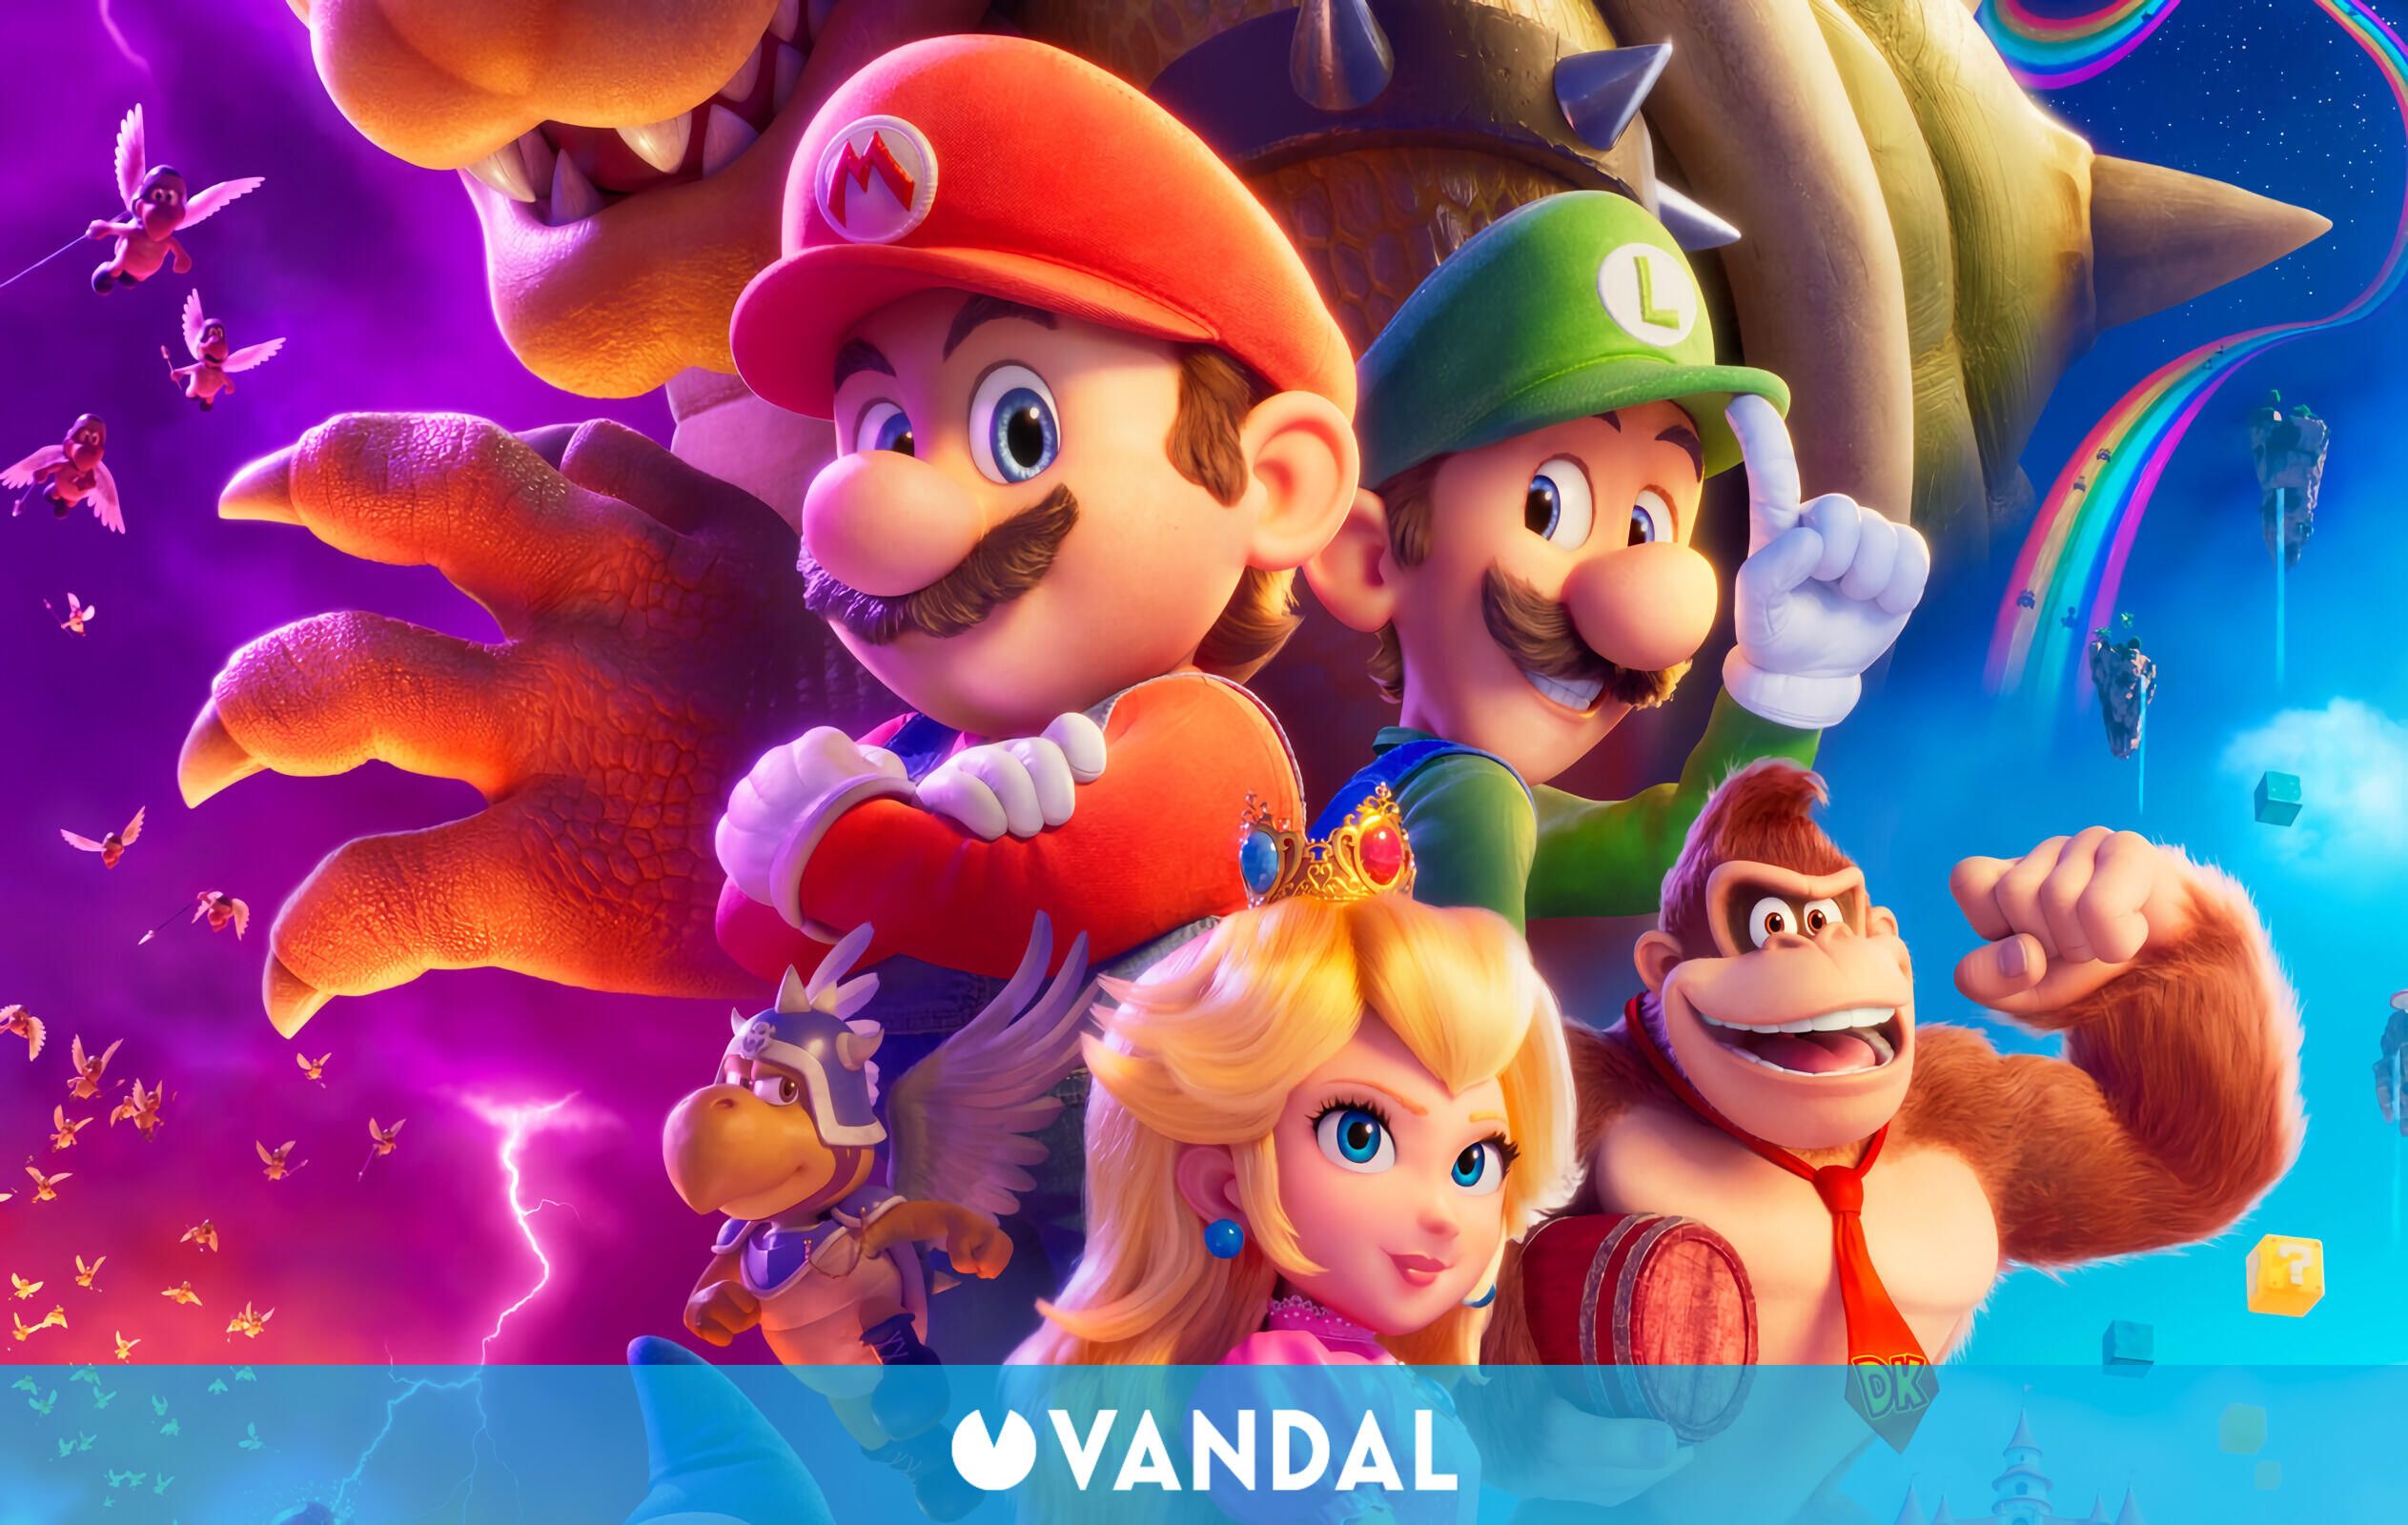 período juego Tranquilidad de espíritu Super Mario Bros. La película presenta su póster oficial - Vandal